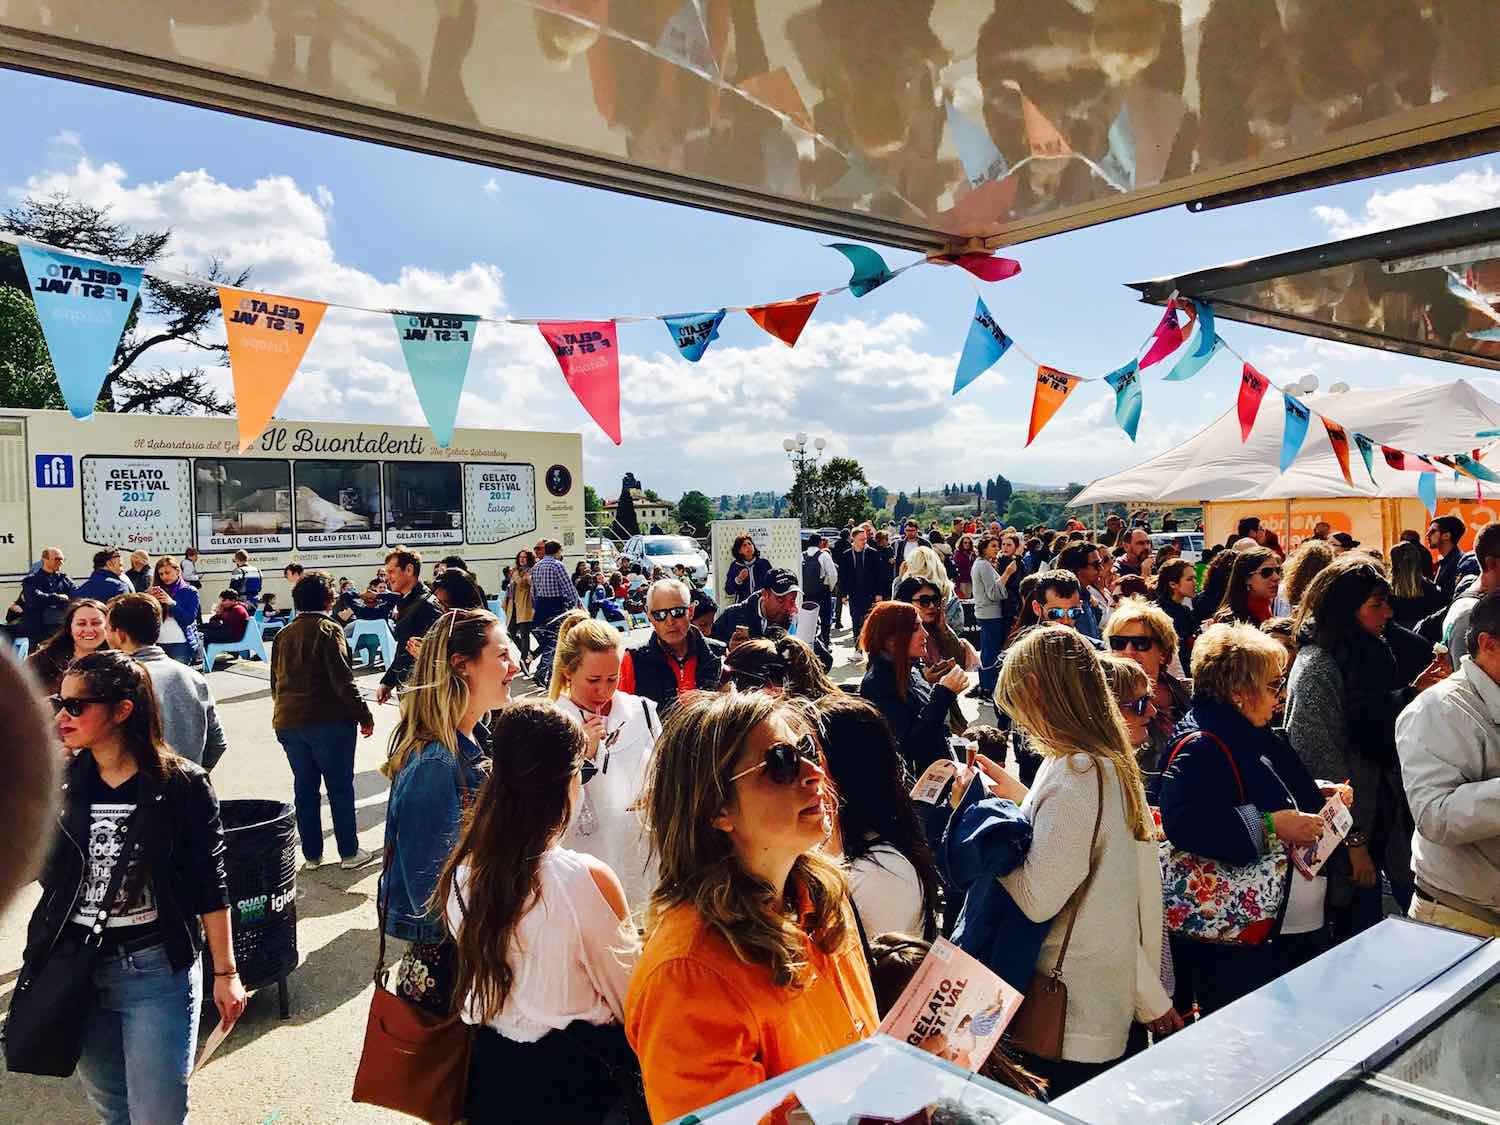 Gelato Festival, è la kermesse dedicata al gelato, giunta nel 2018 alla 9° edizione